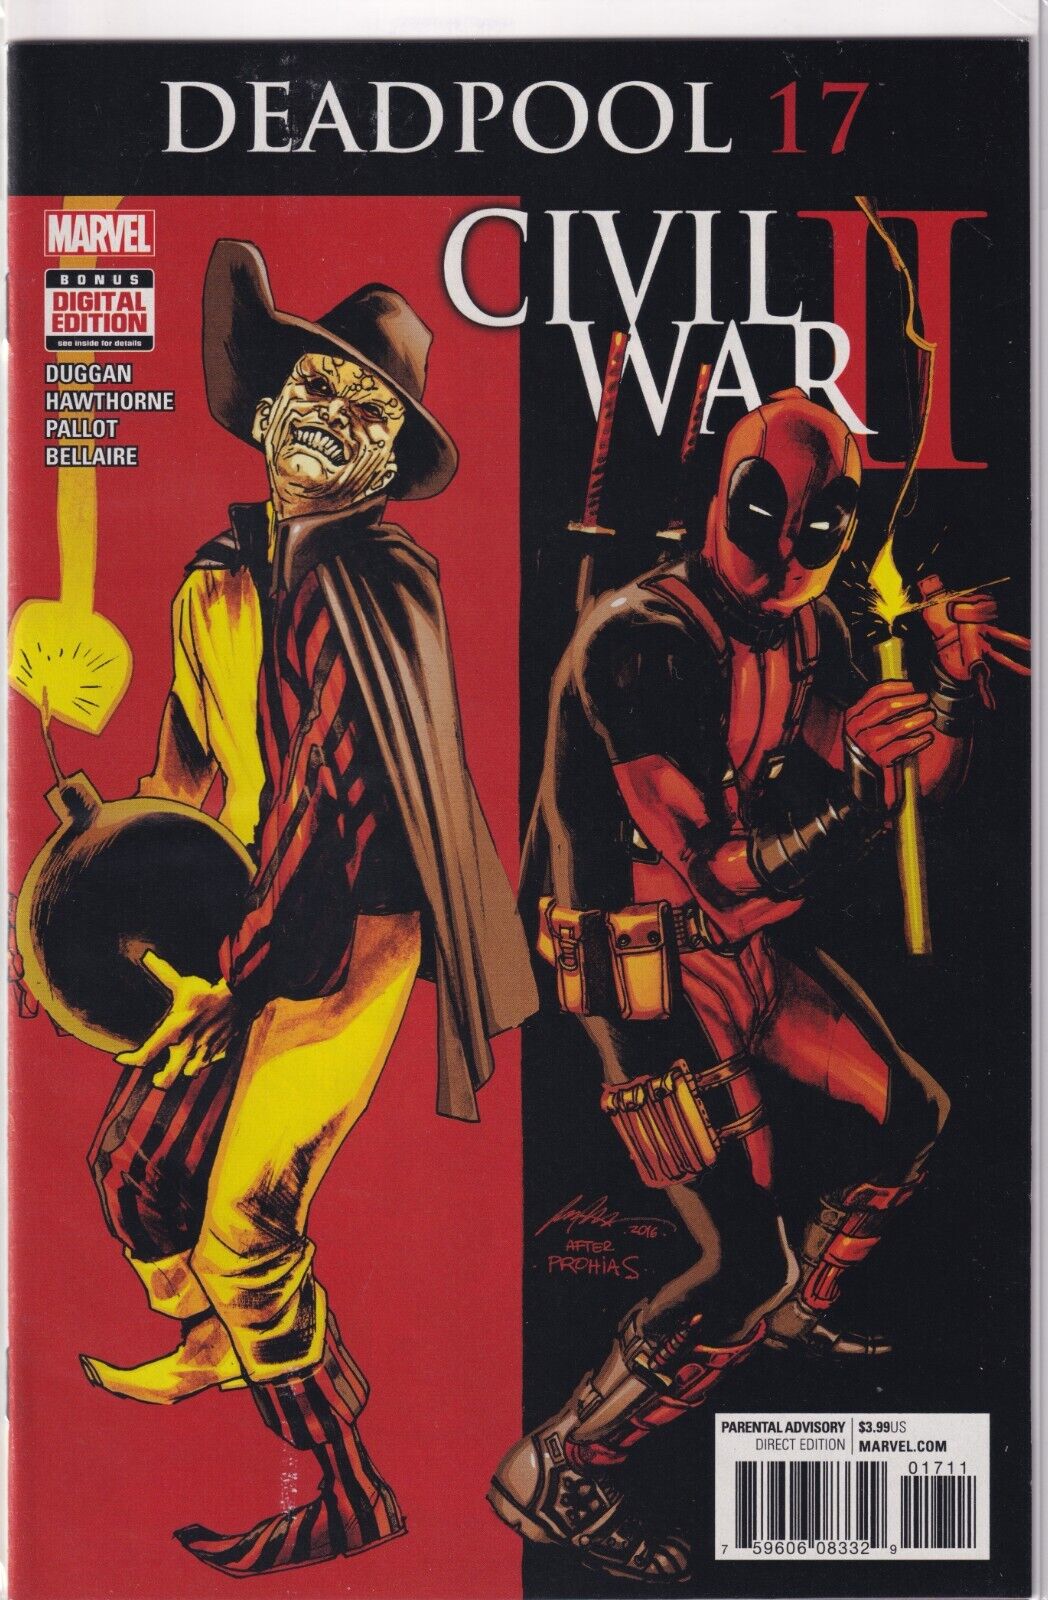 Marvel Comics Deadpool #17 Civil War II Tie-In First 1st Printing 2016 NM B&B